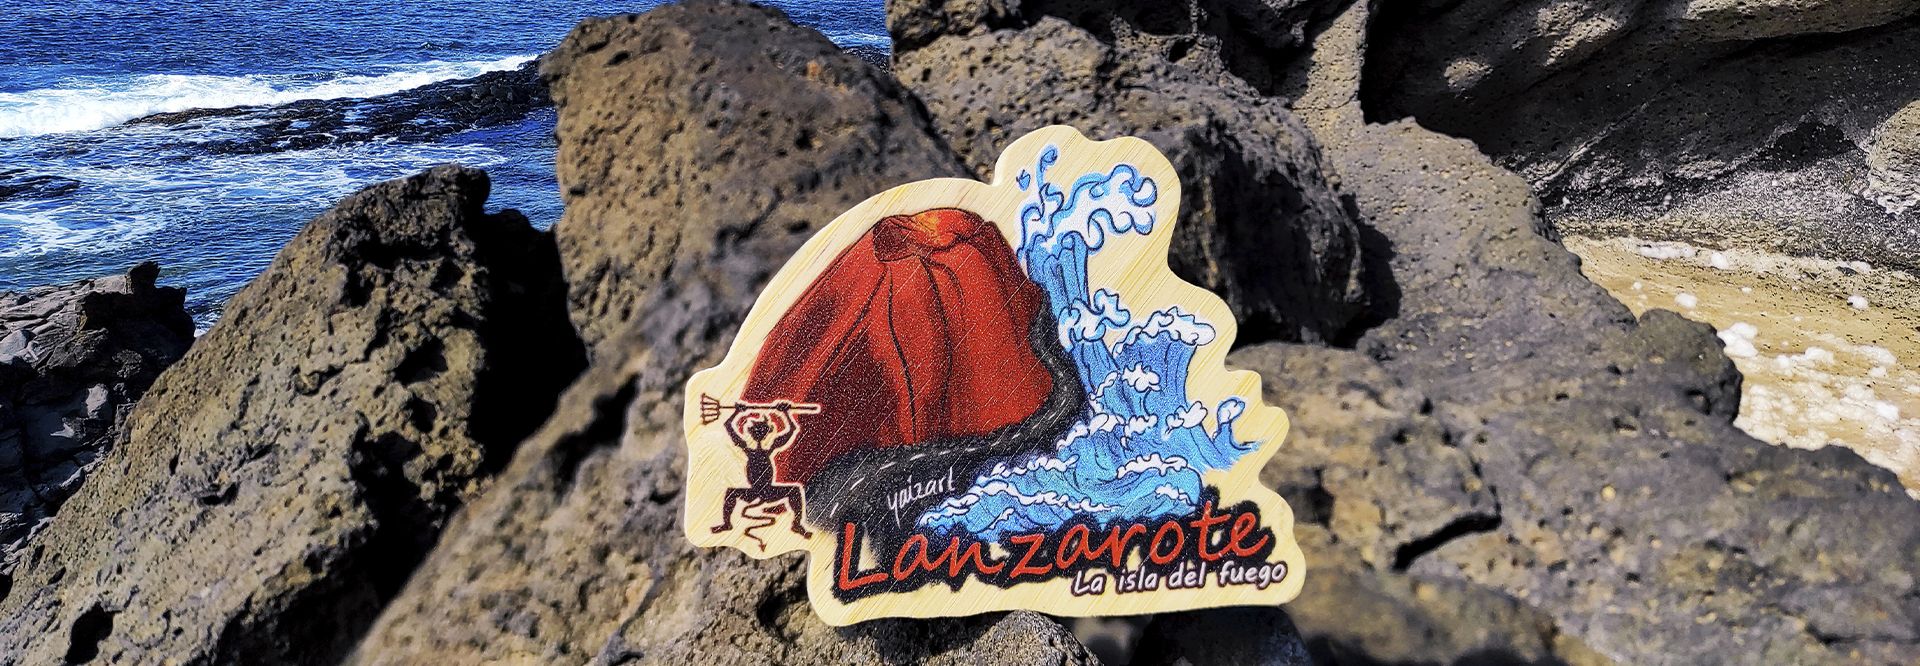 Lanzarote, isla del fuego. Guía de turismo y planazos.